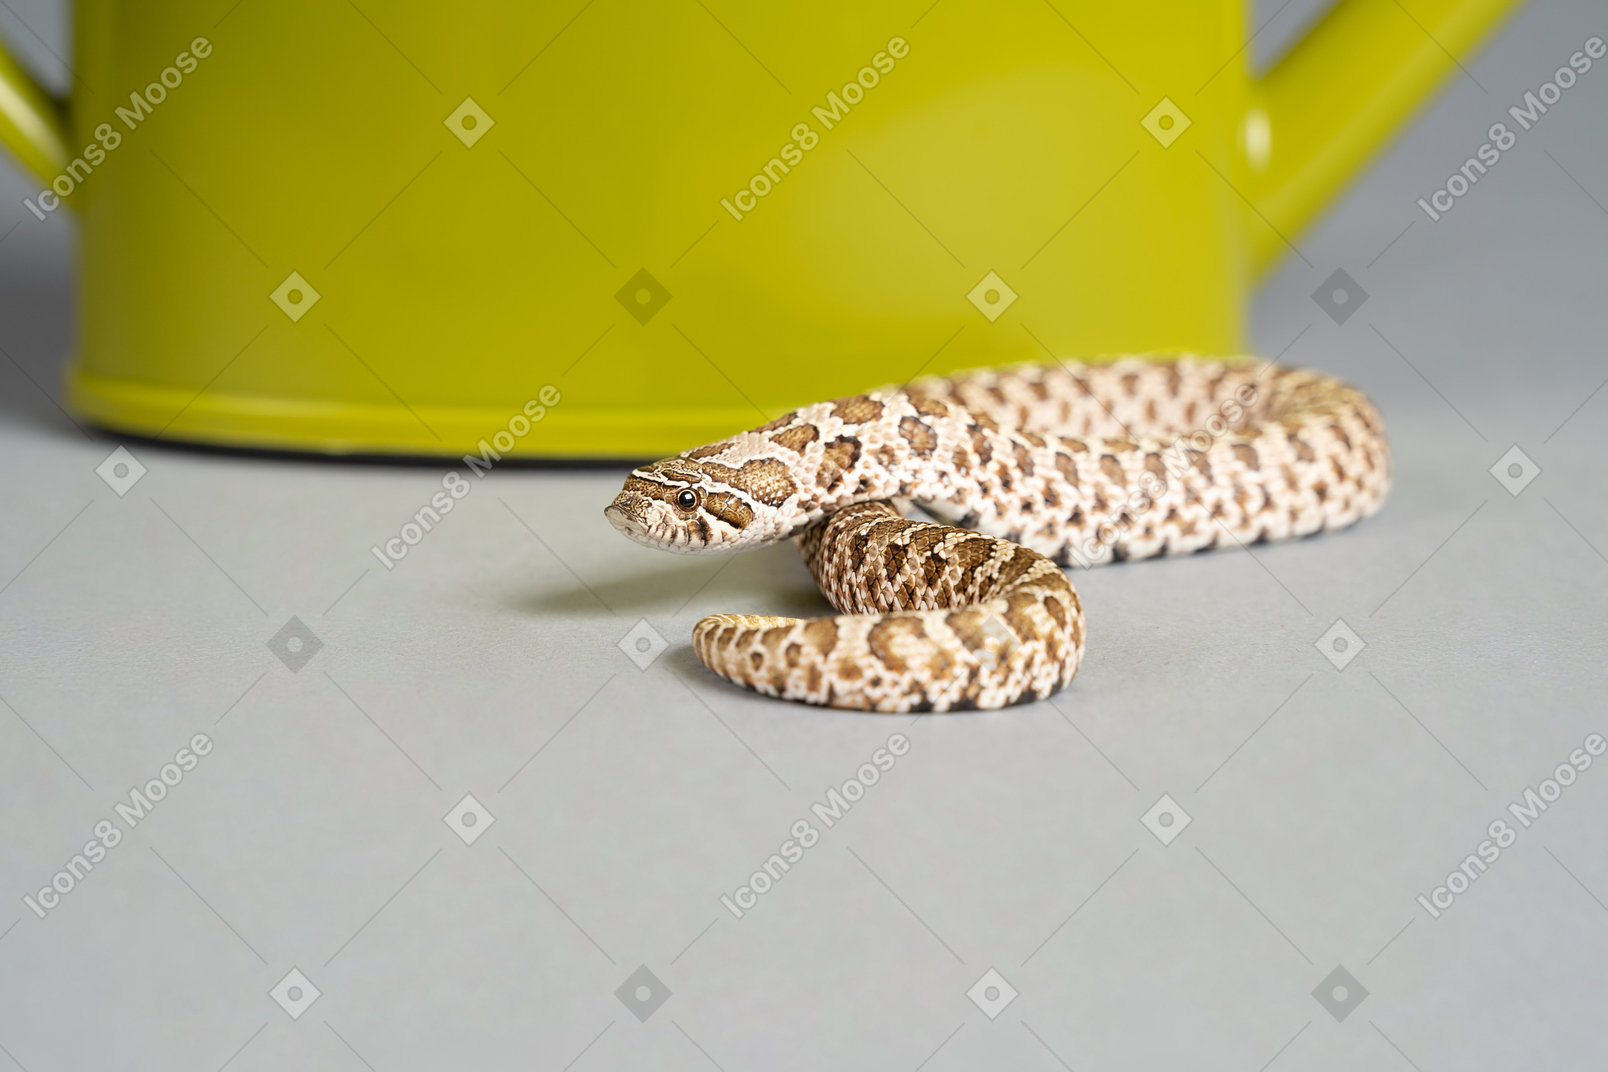 Uma pequena serpente de milho perto de um regador